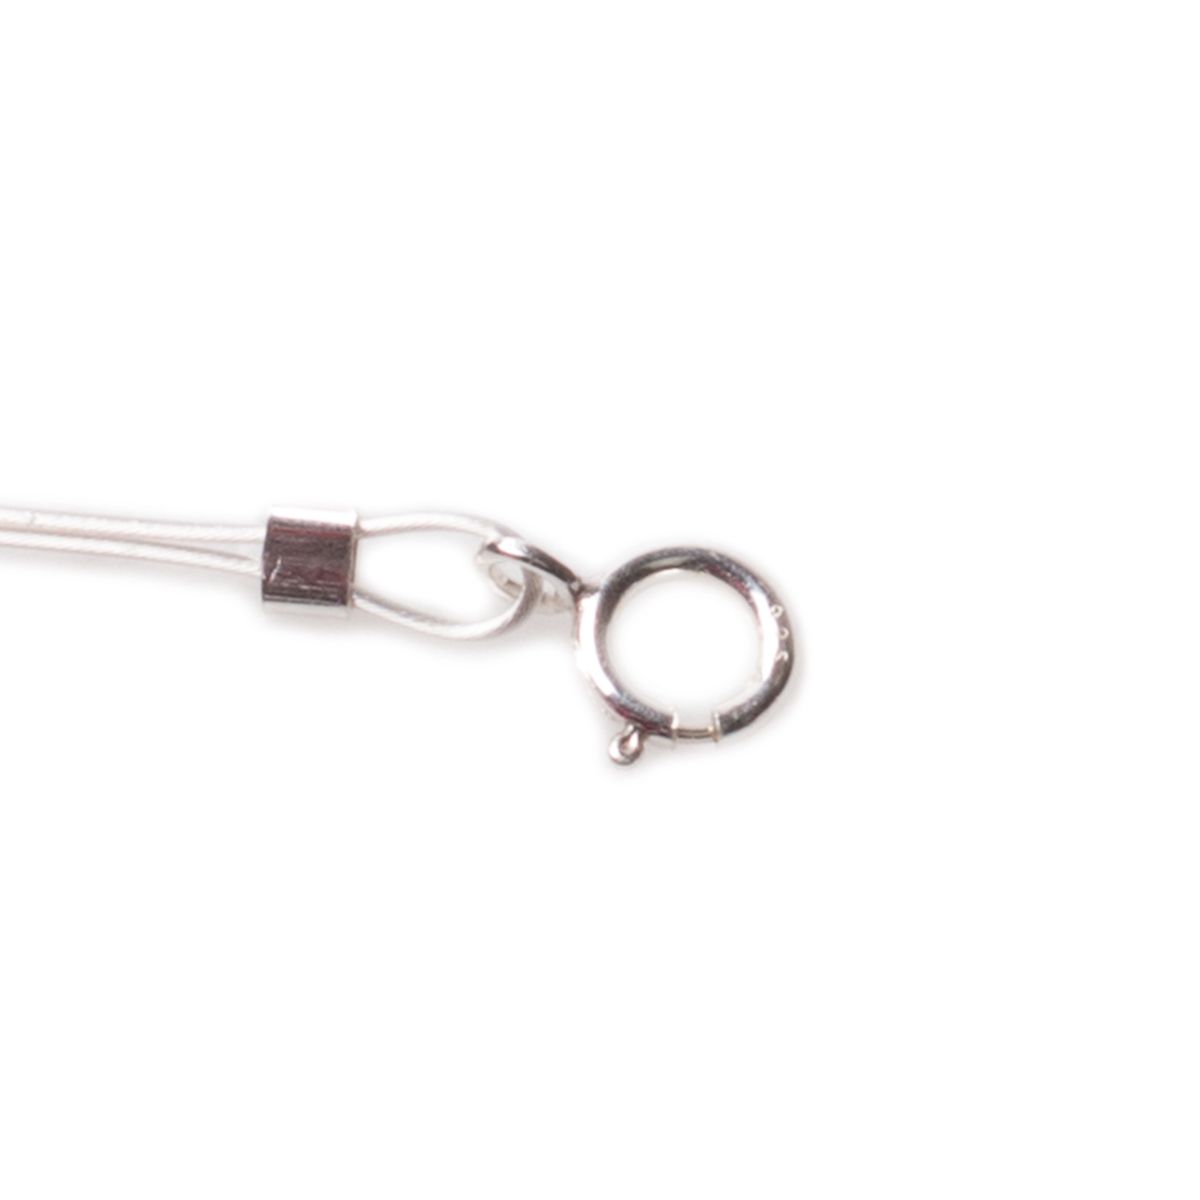 Locking Pin Back Locking Pin Keeper Clasp Metal Pin Backing - Temu